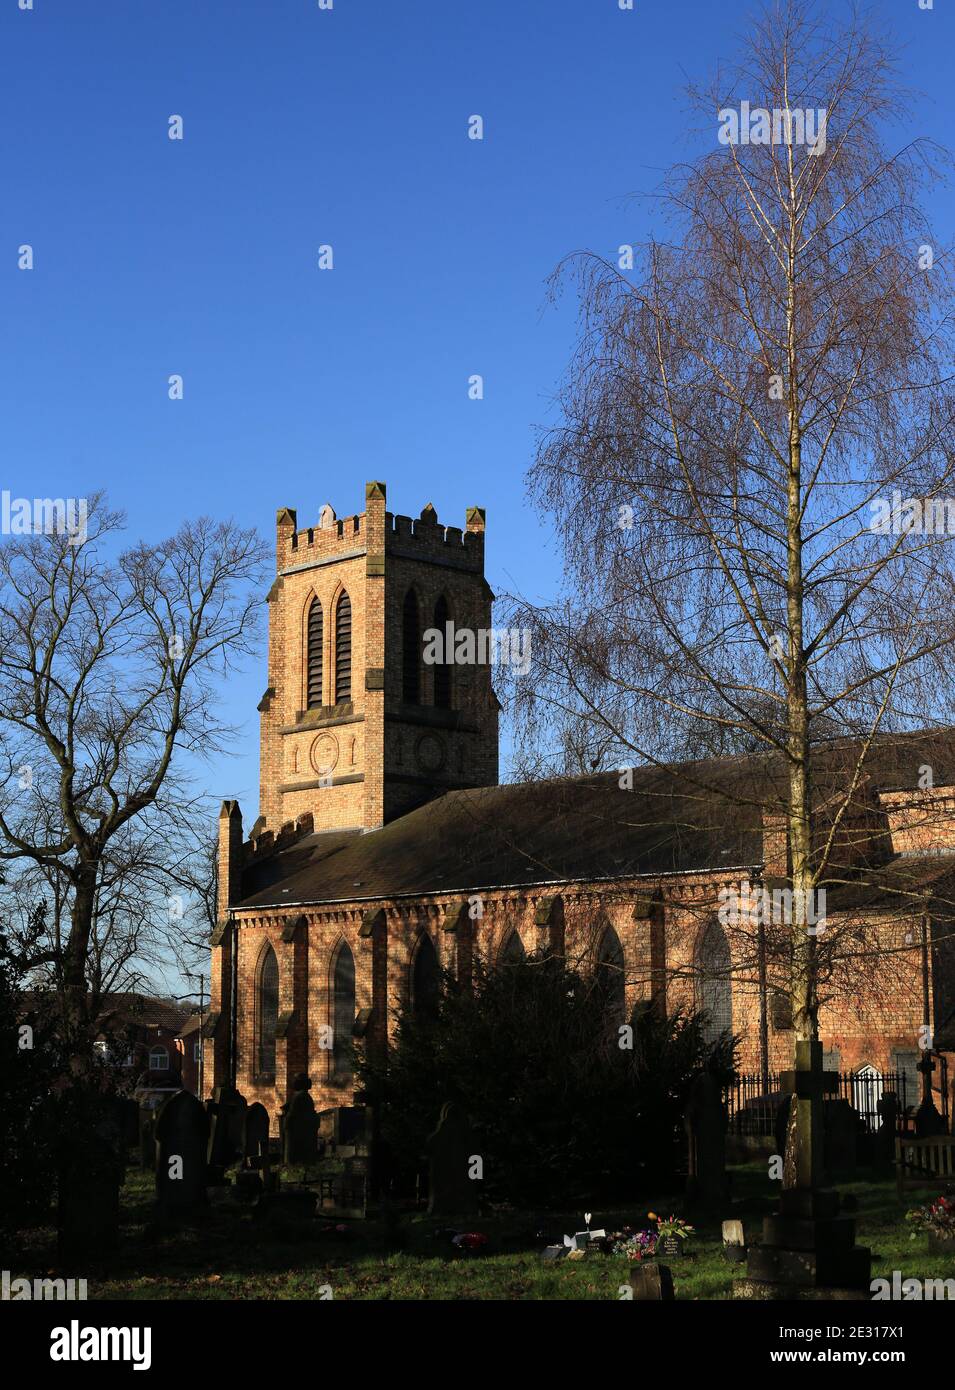 Amblecote Holy trinity C of E church, Stourbridge, West midlands, England, UK. Stock Photo